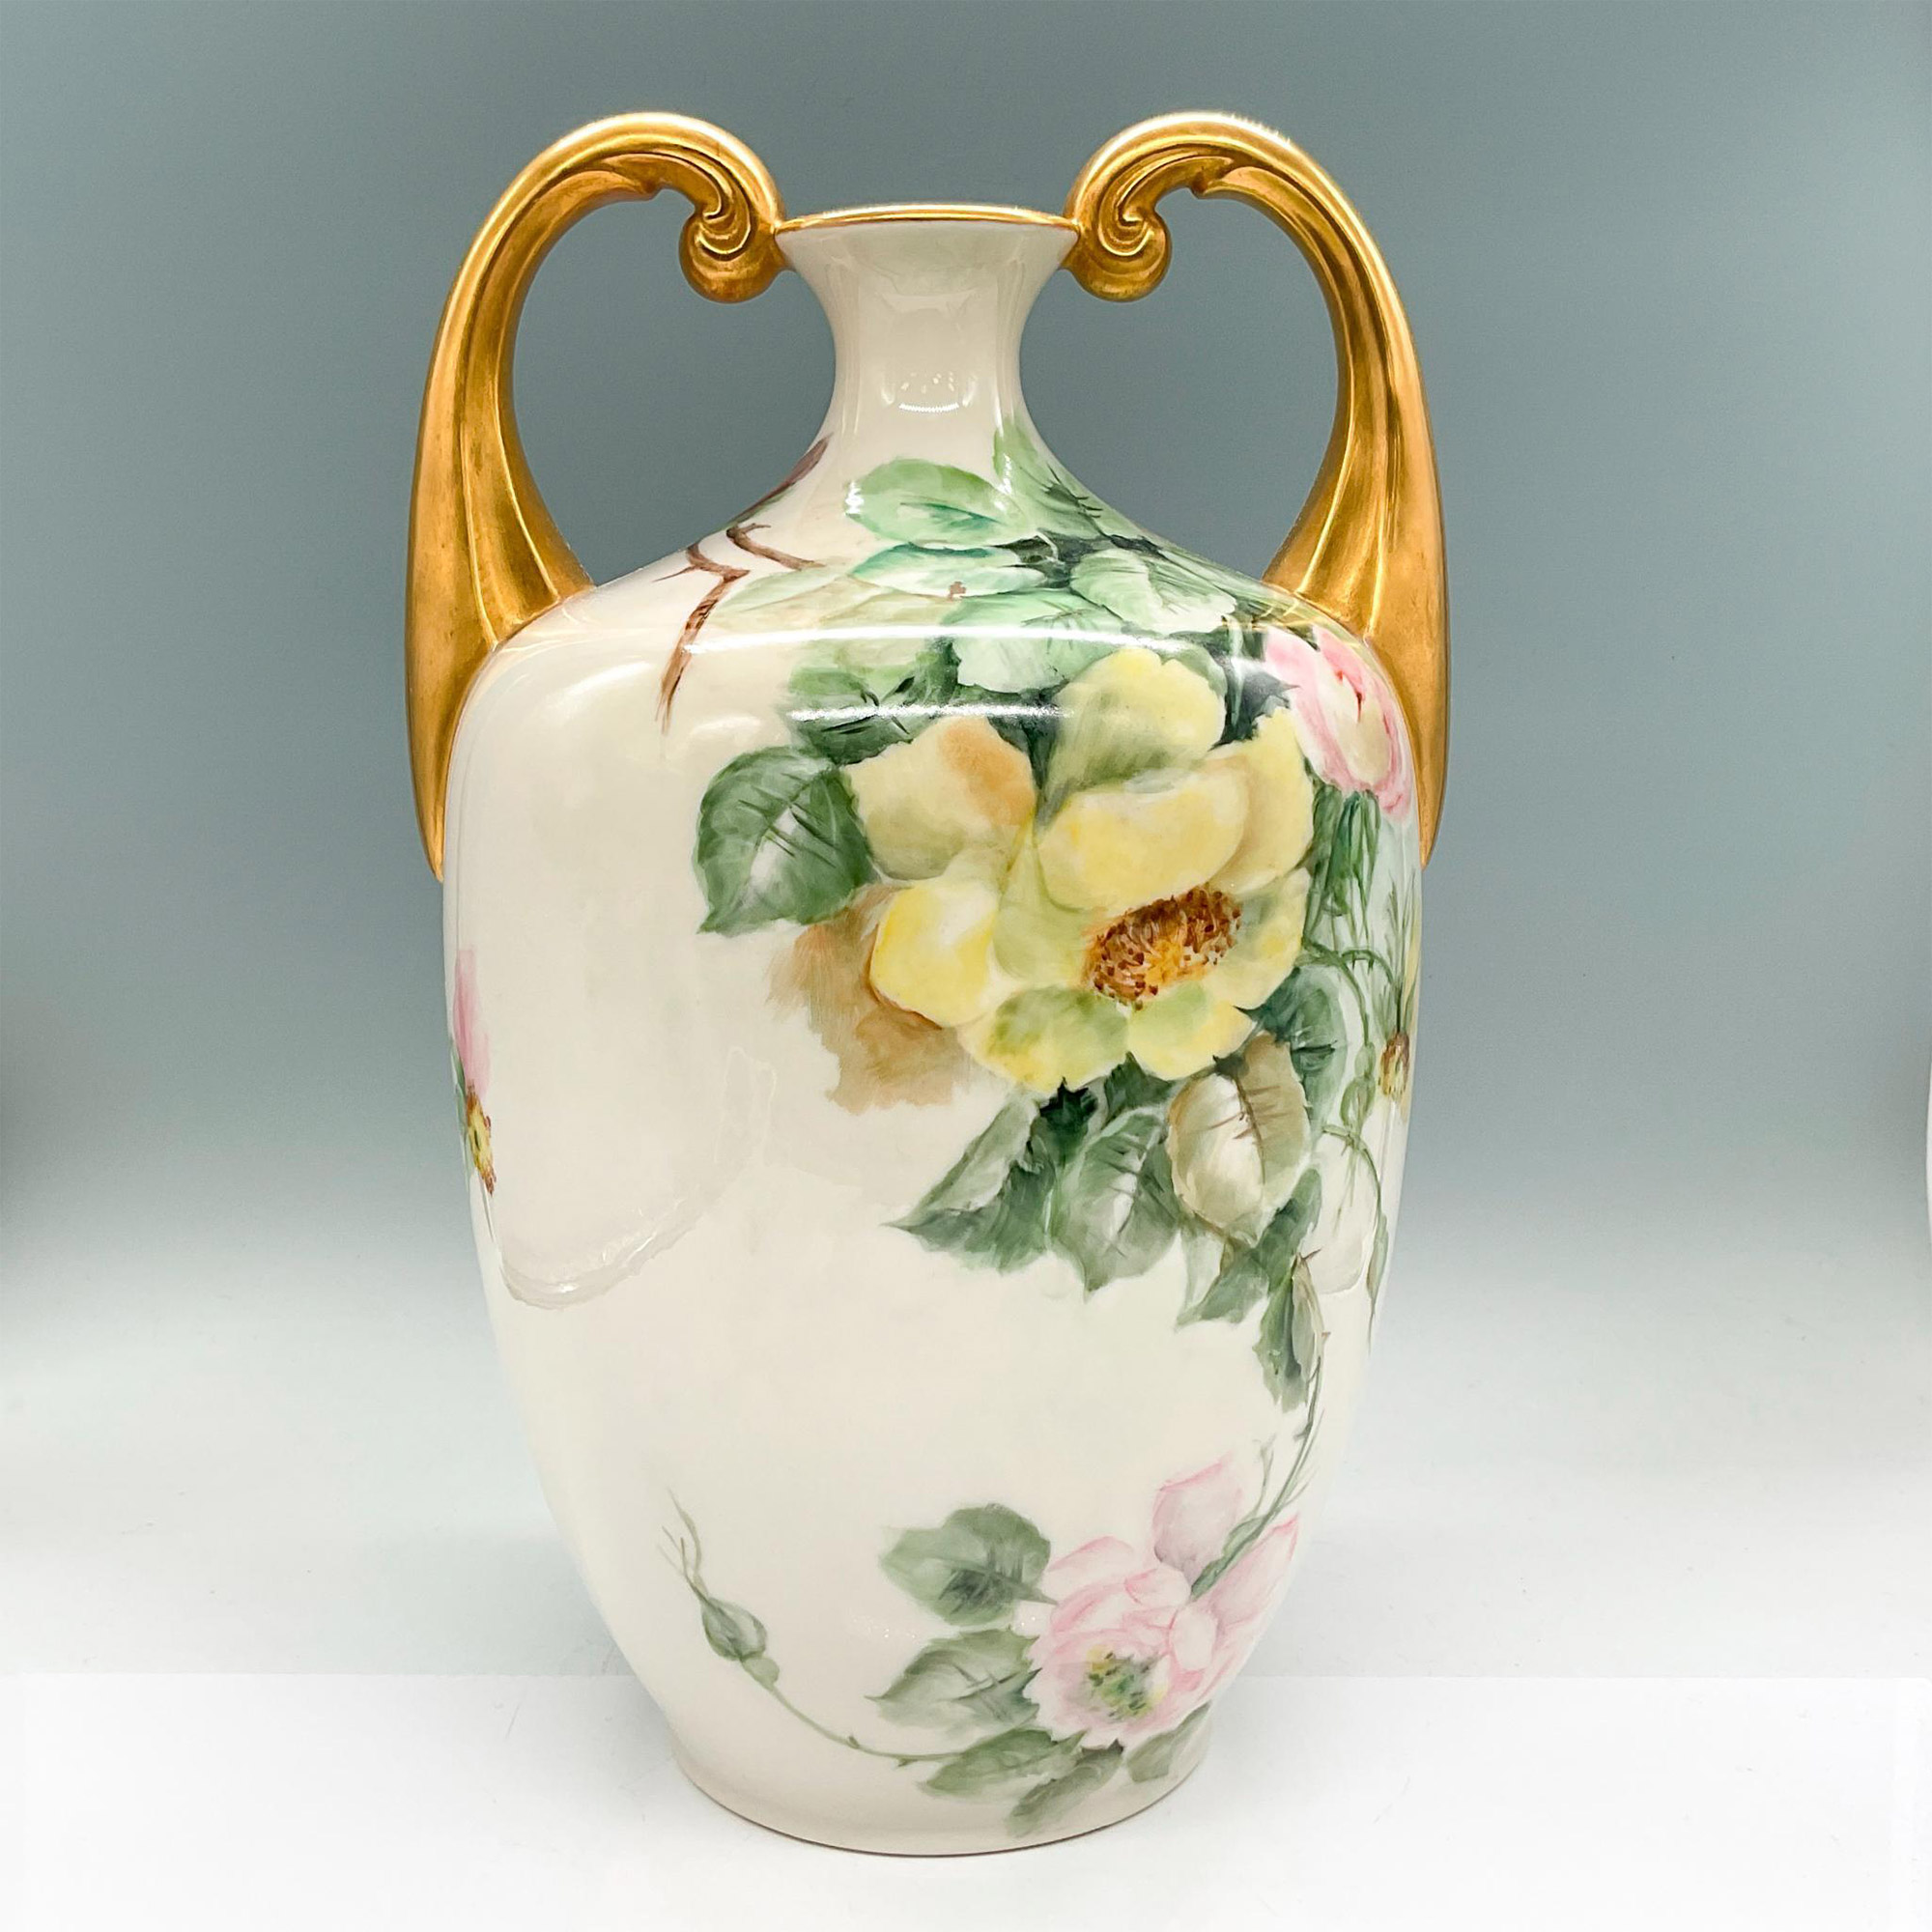 Lenox Belleek Porcelain Amphora Vase, Roses - Image 2 of 3